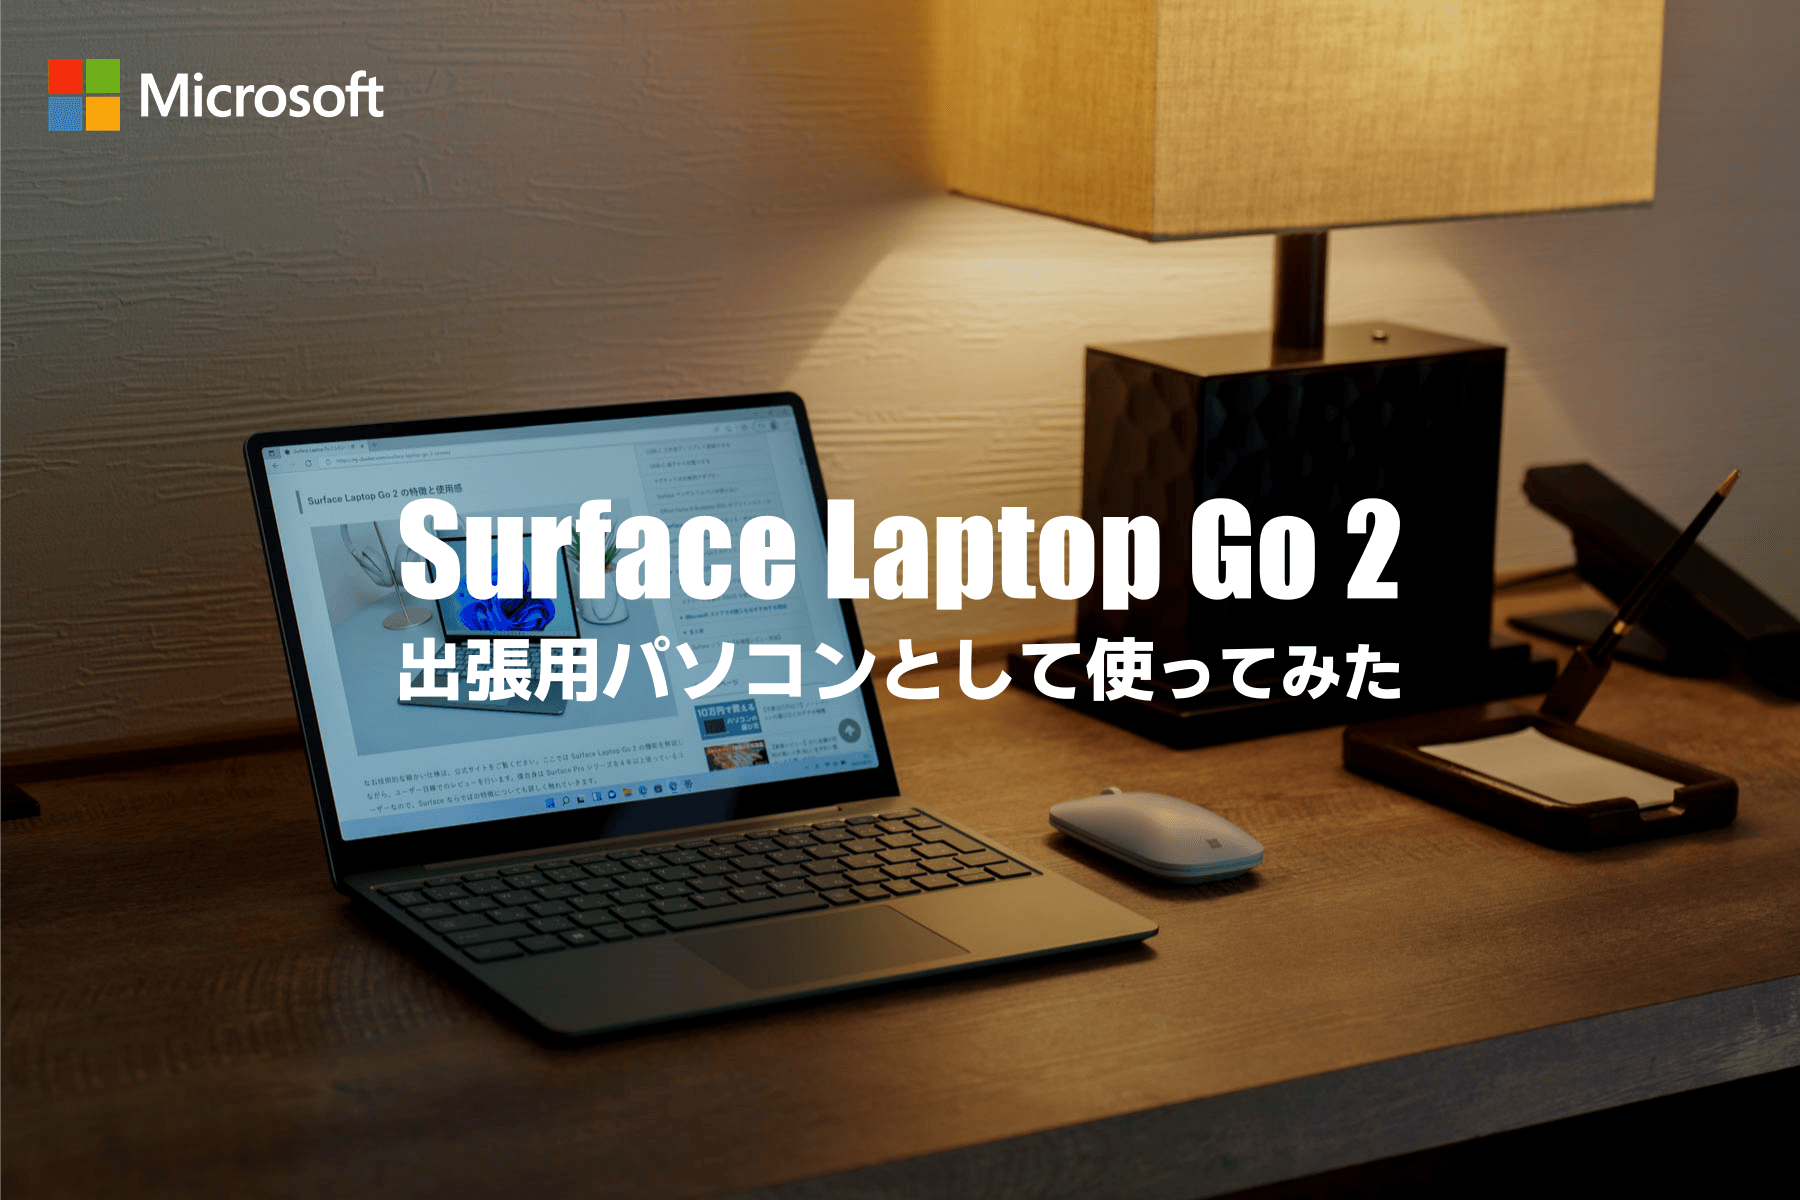 出張用に Surface Laptop Go 2 が最適だった！おすすめの小型・軽量ノートパソコン